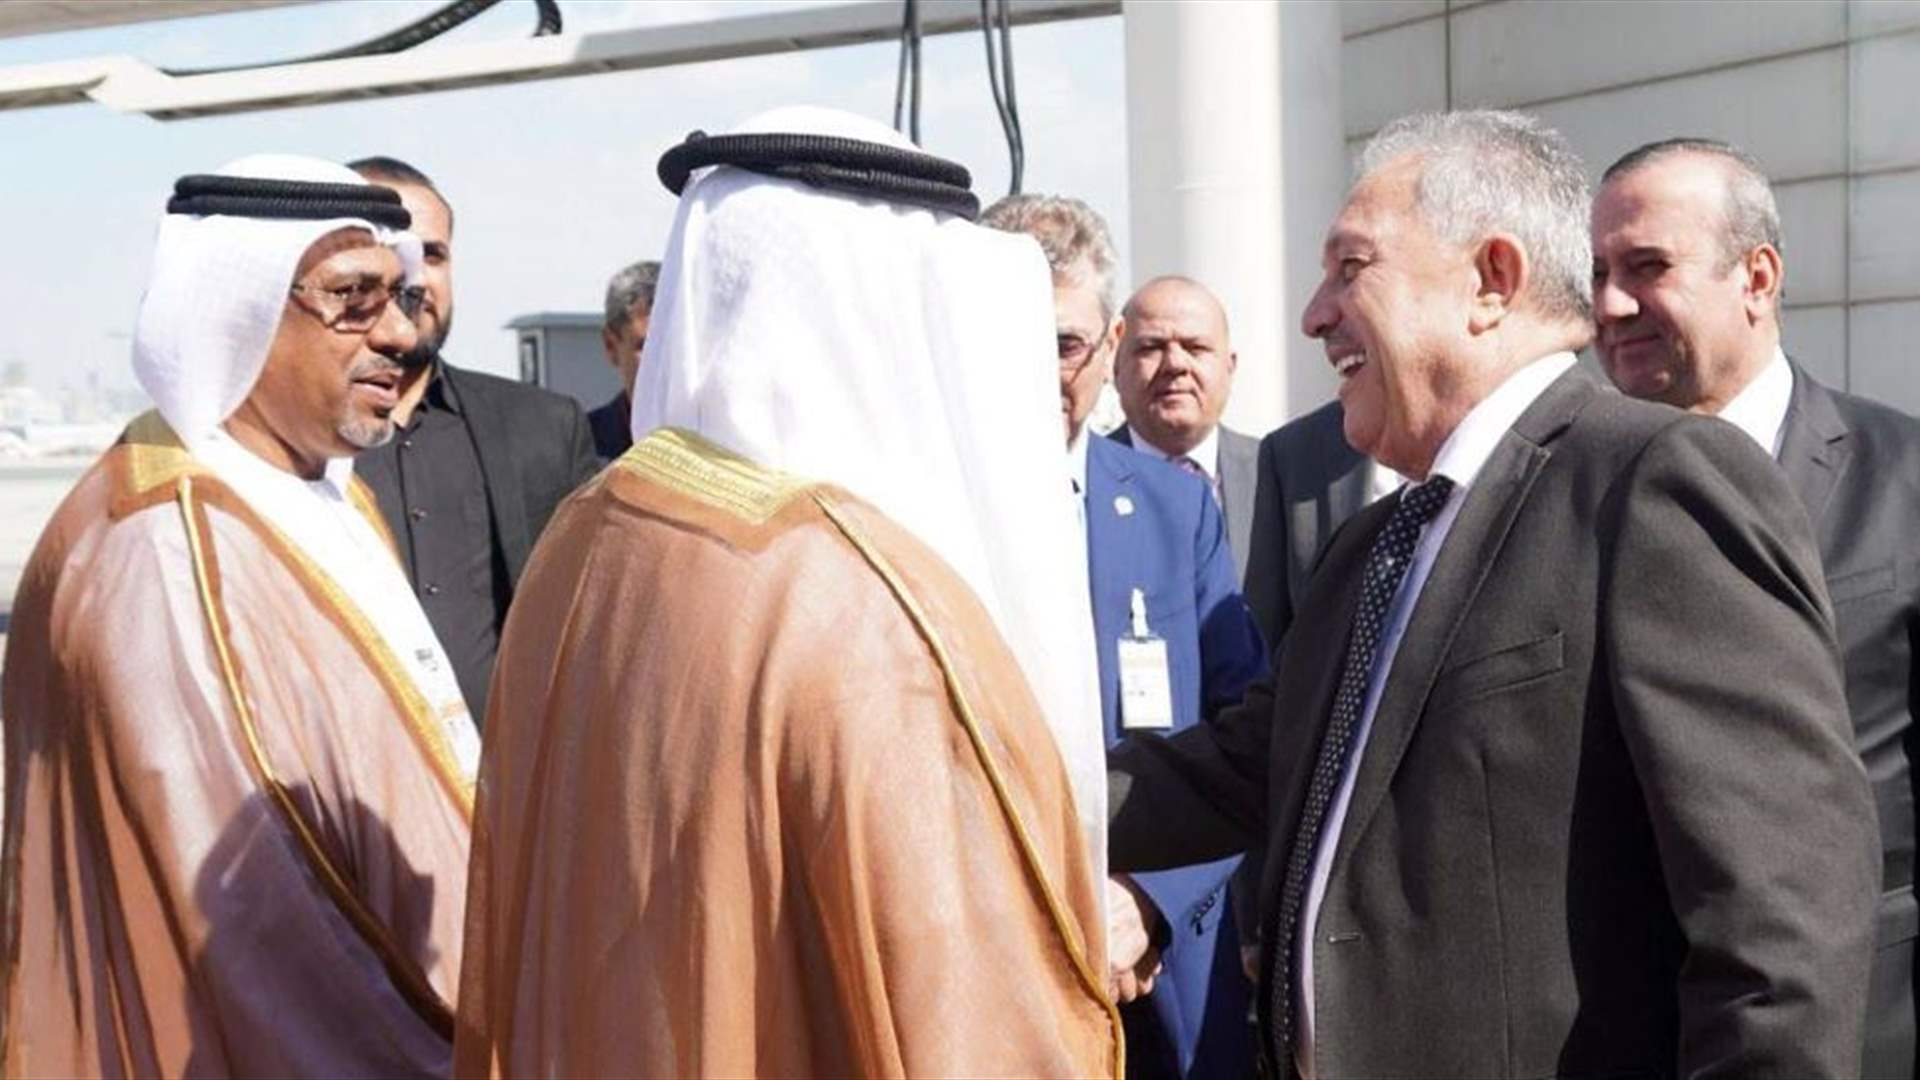 وصول رئيس مجلس الوزراء السوري إلى الإمارات للمشارك في القمة العالمية للعمل المناخي